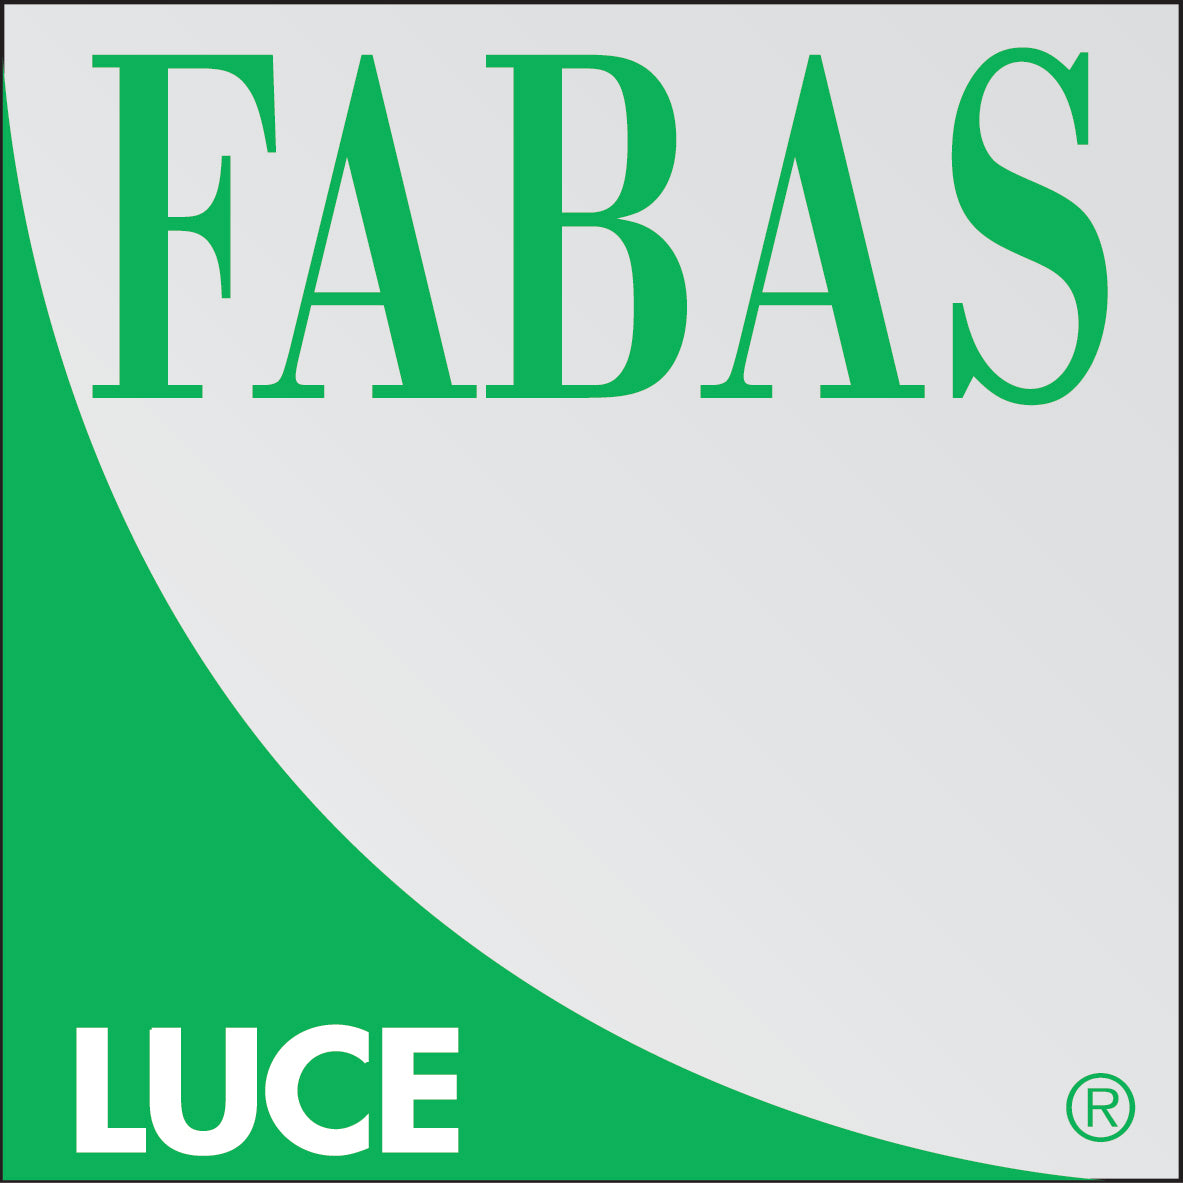 Fabas Luce logo